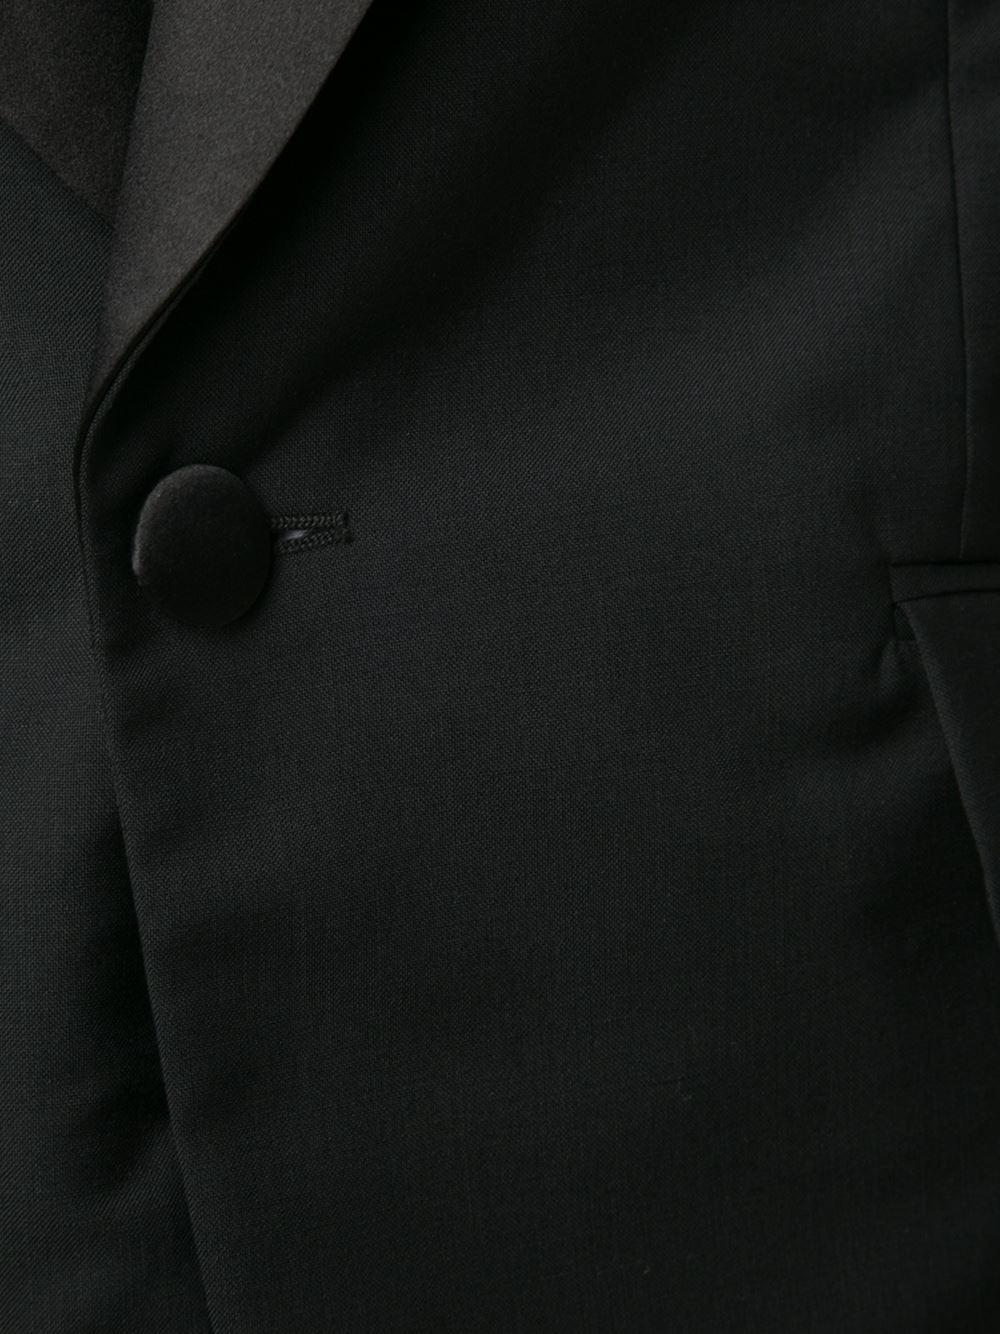 Vivienne Westwood Silk Tuxedo Blazer in Black for Men - Lyst